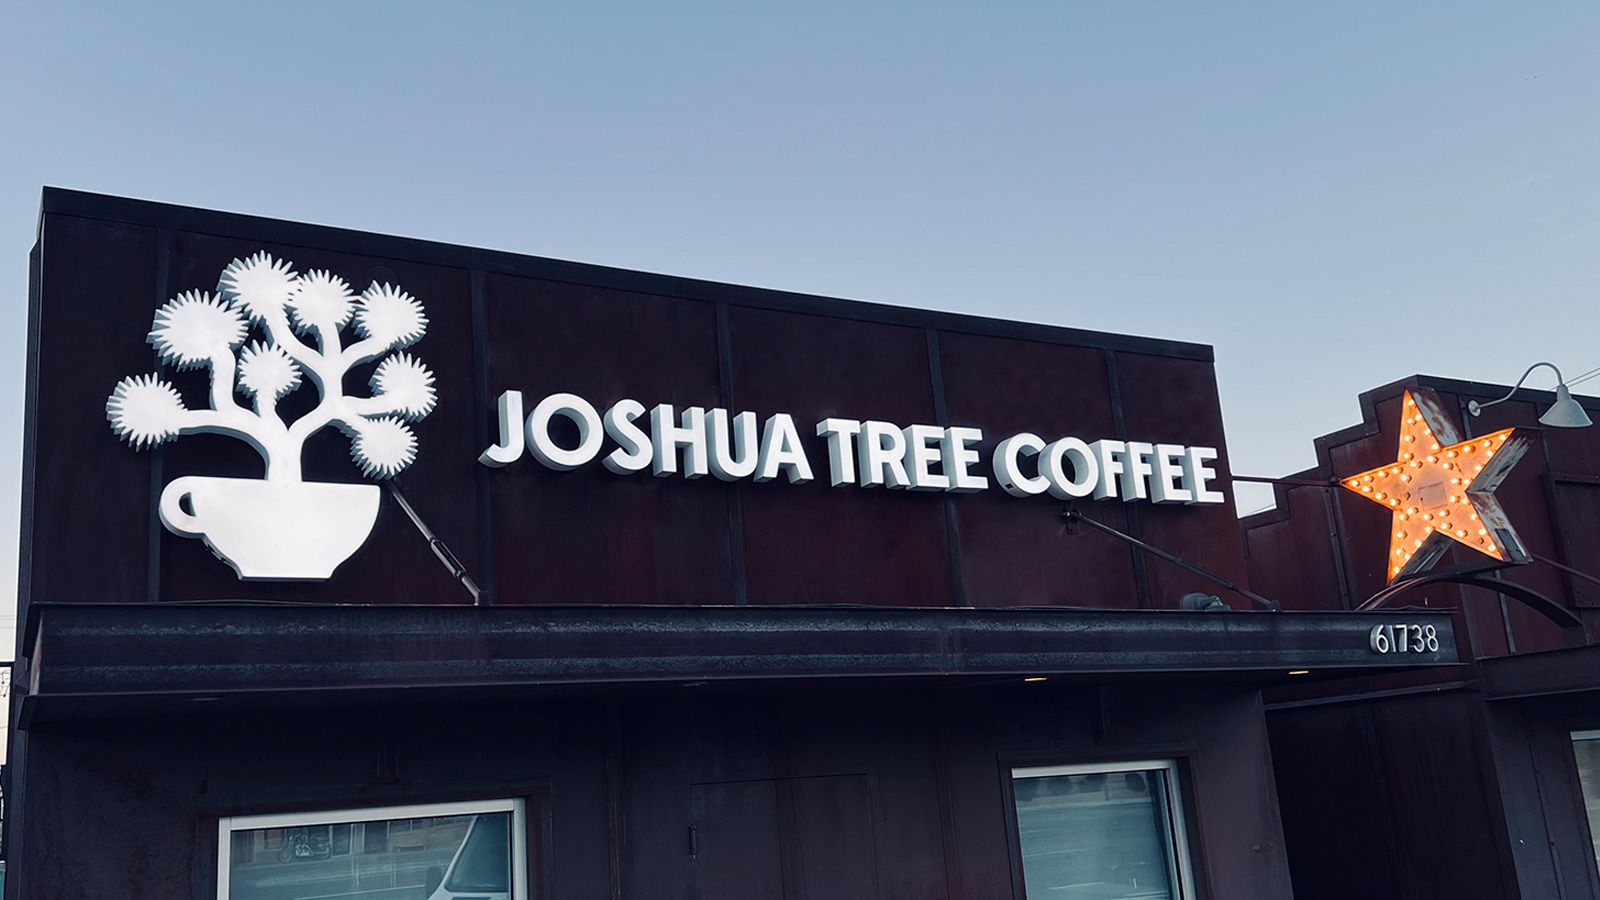 joshua tree coffee light up signage